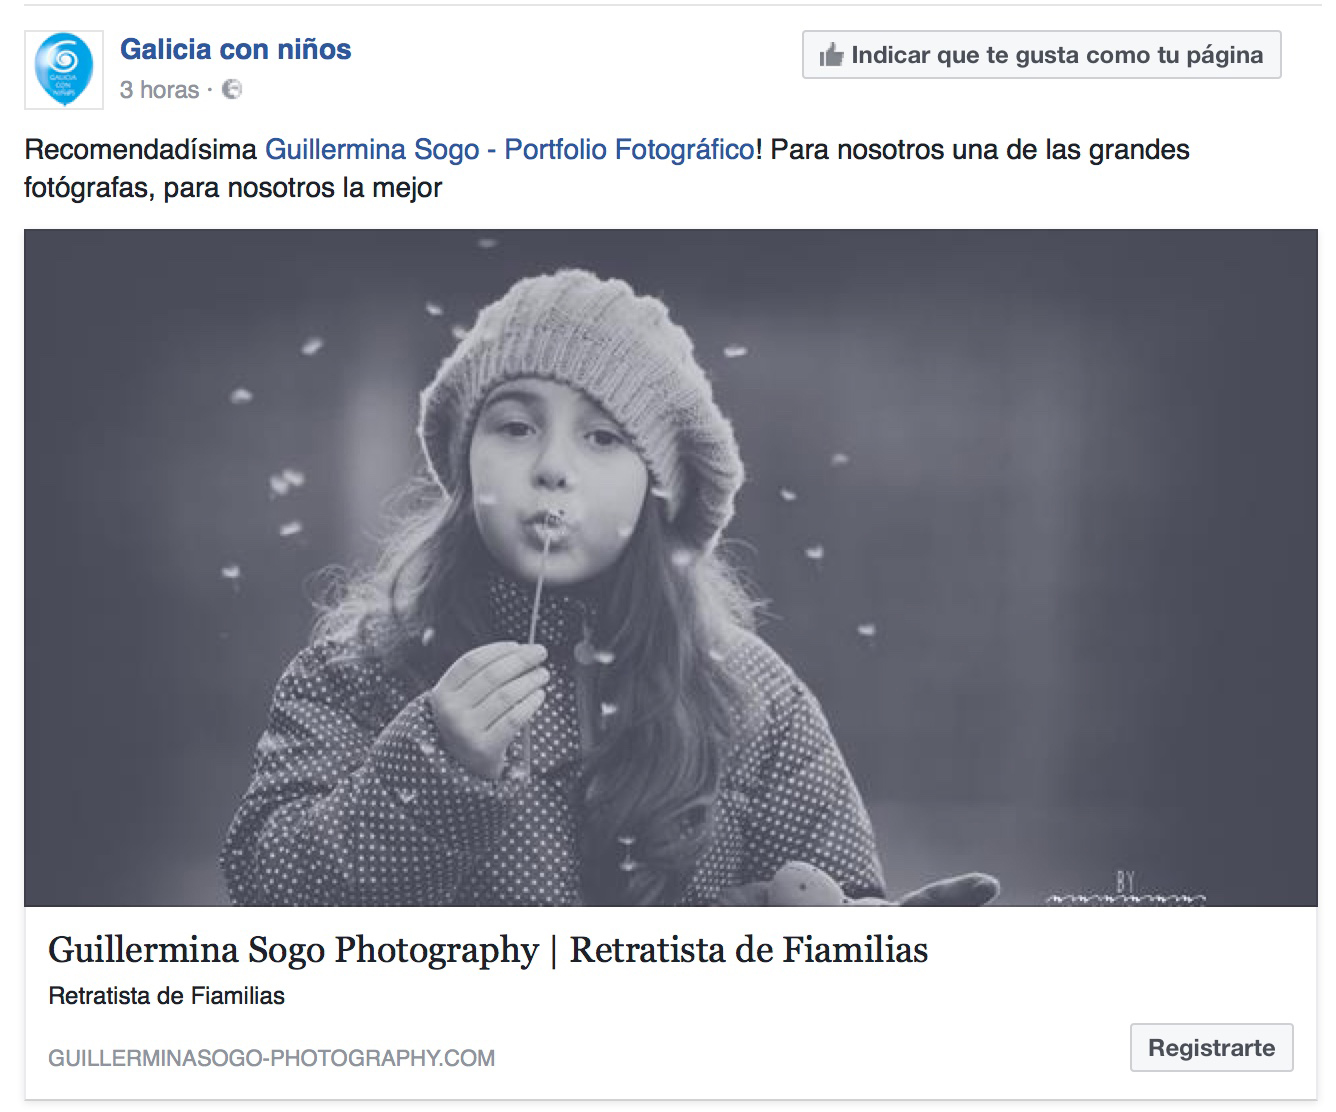 Guillermina Sogo Photo - recomendacion.jpg